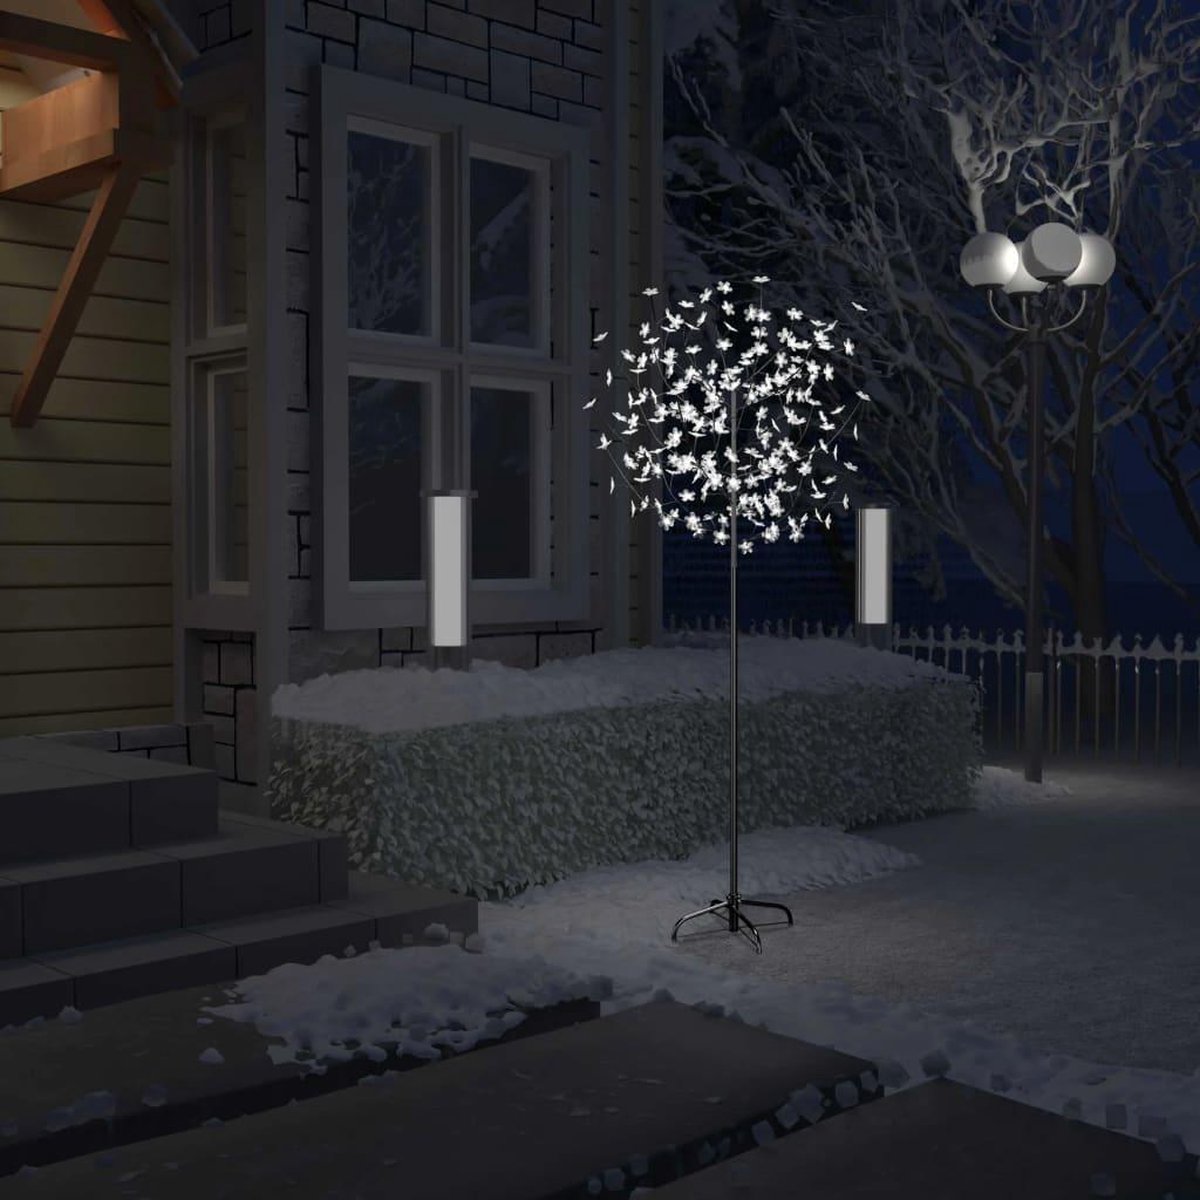 Kerstboom - Kunstkerstboom - Verlicht - 200 LED's - Koud wit licht - kersenbloesem - 180 cm